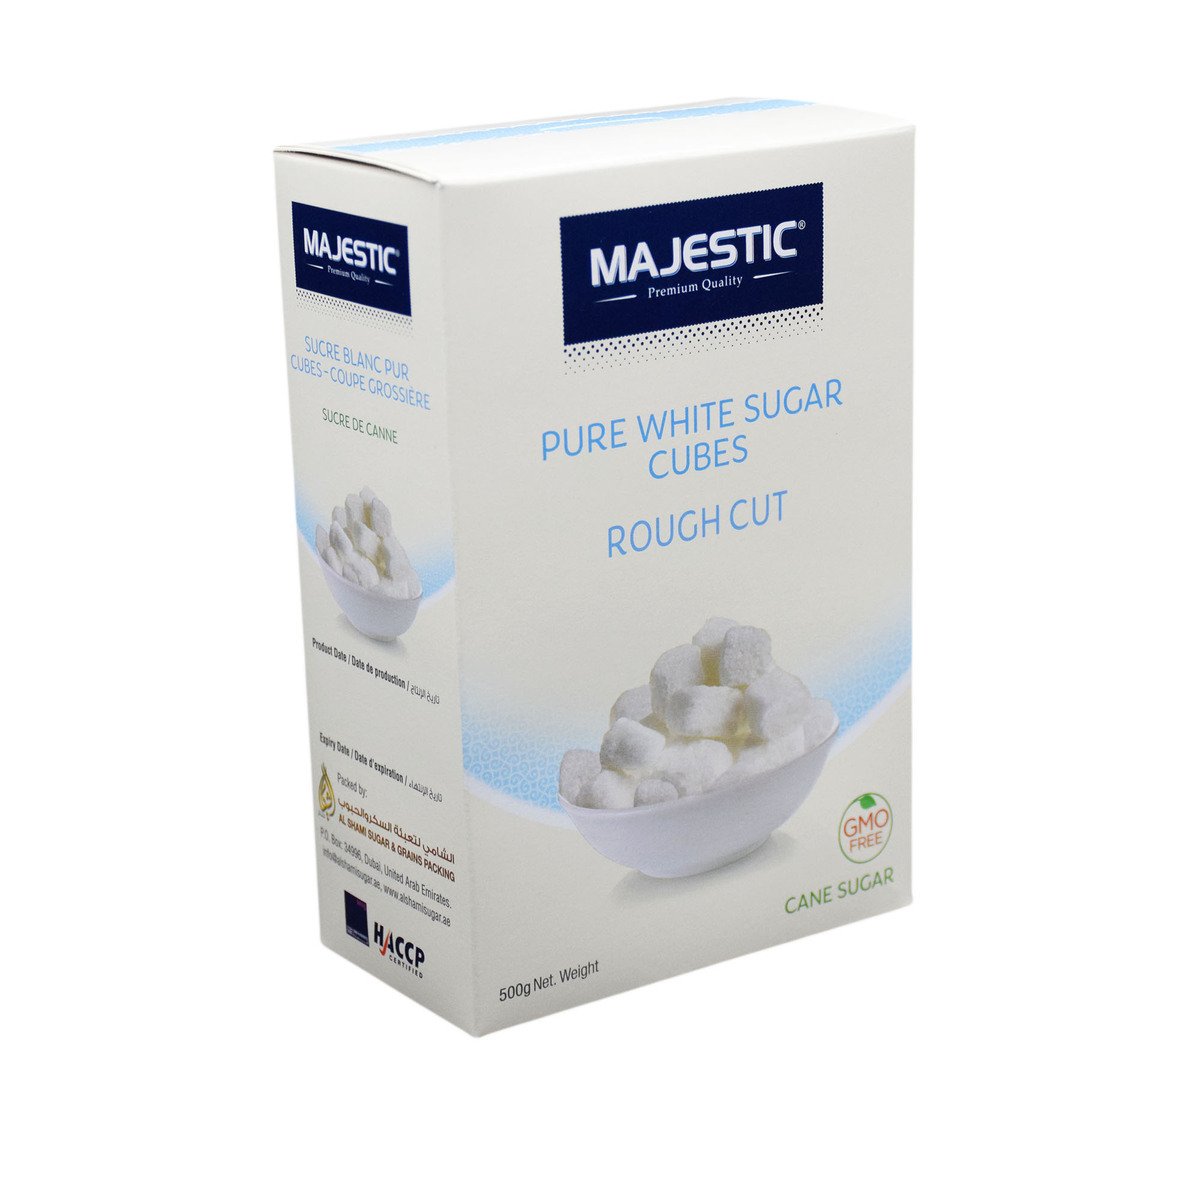 Majestic Pure White Sugar Cubes Rough Cut 500g